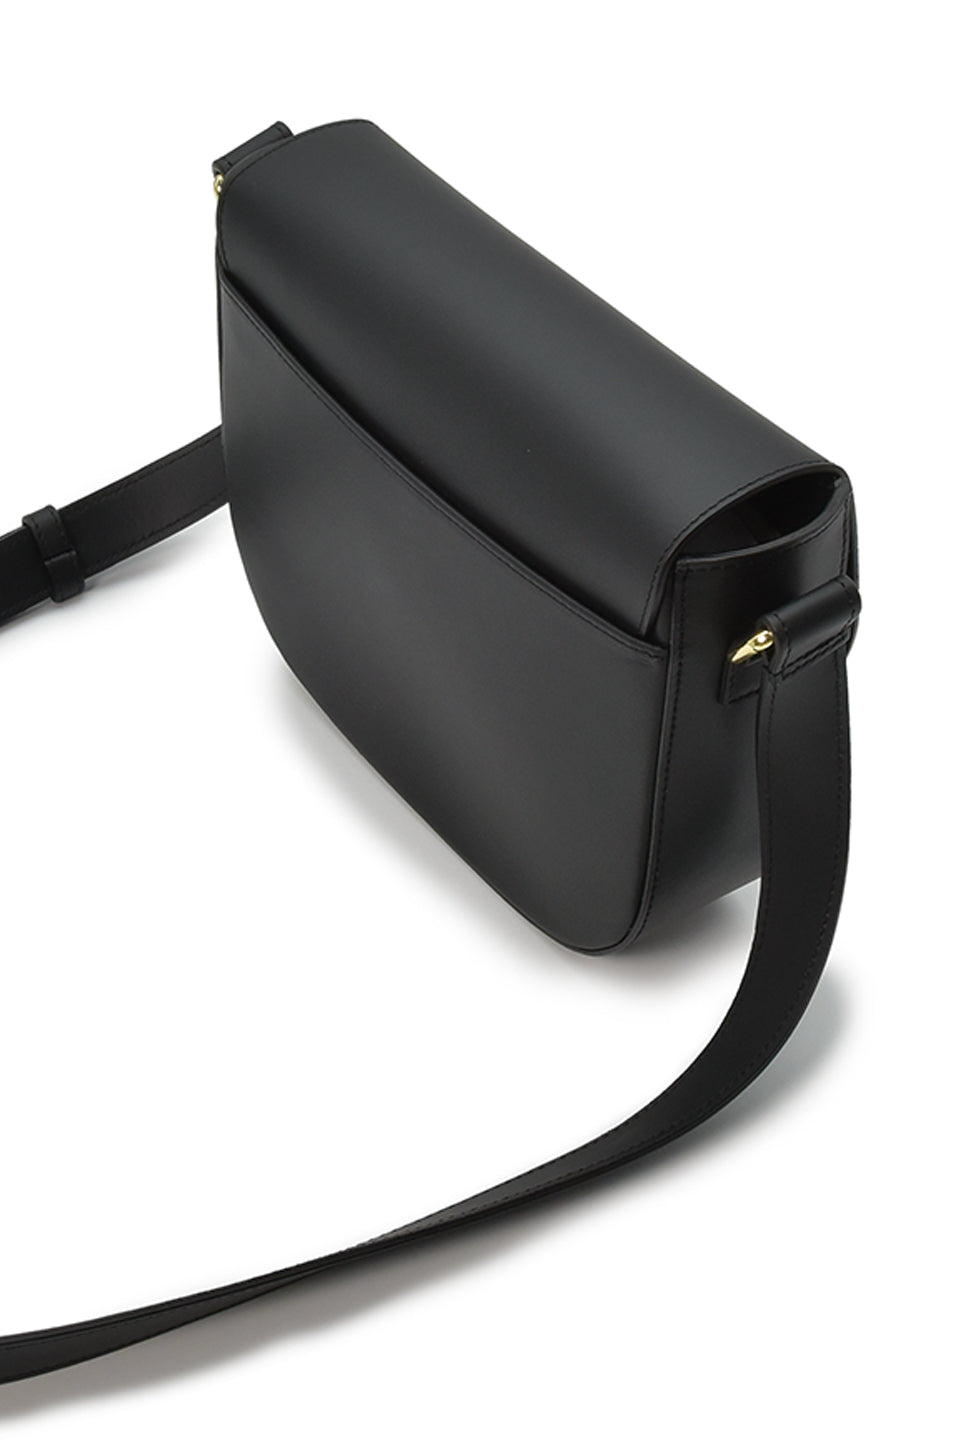 Black leather flap shoulder bag – LabelRow